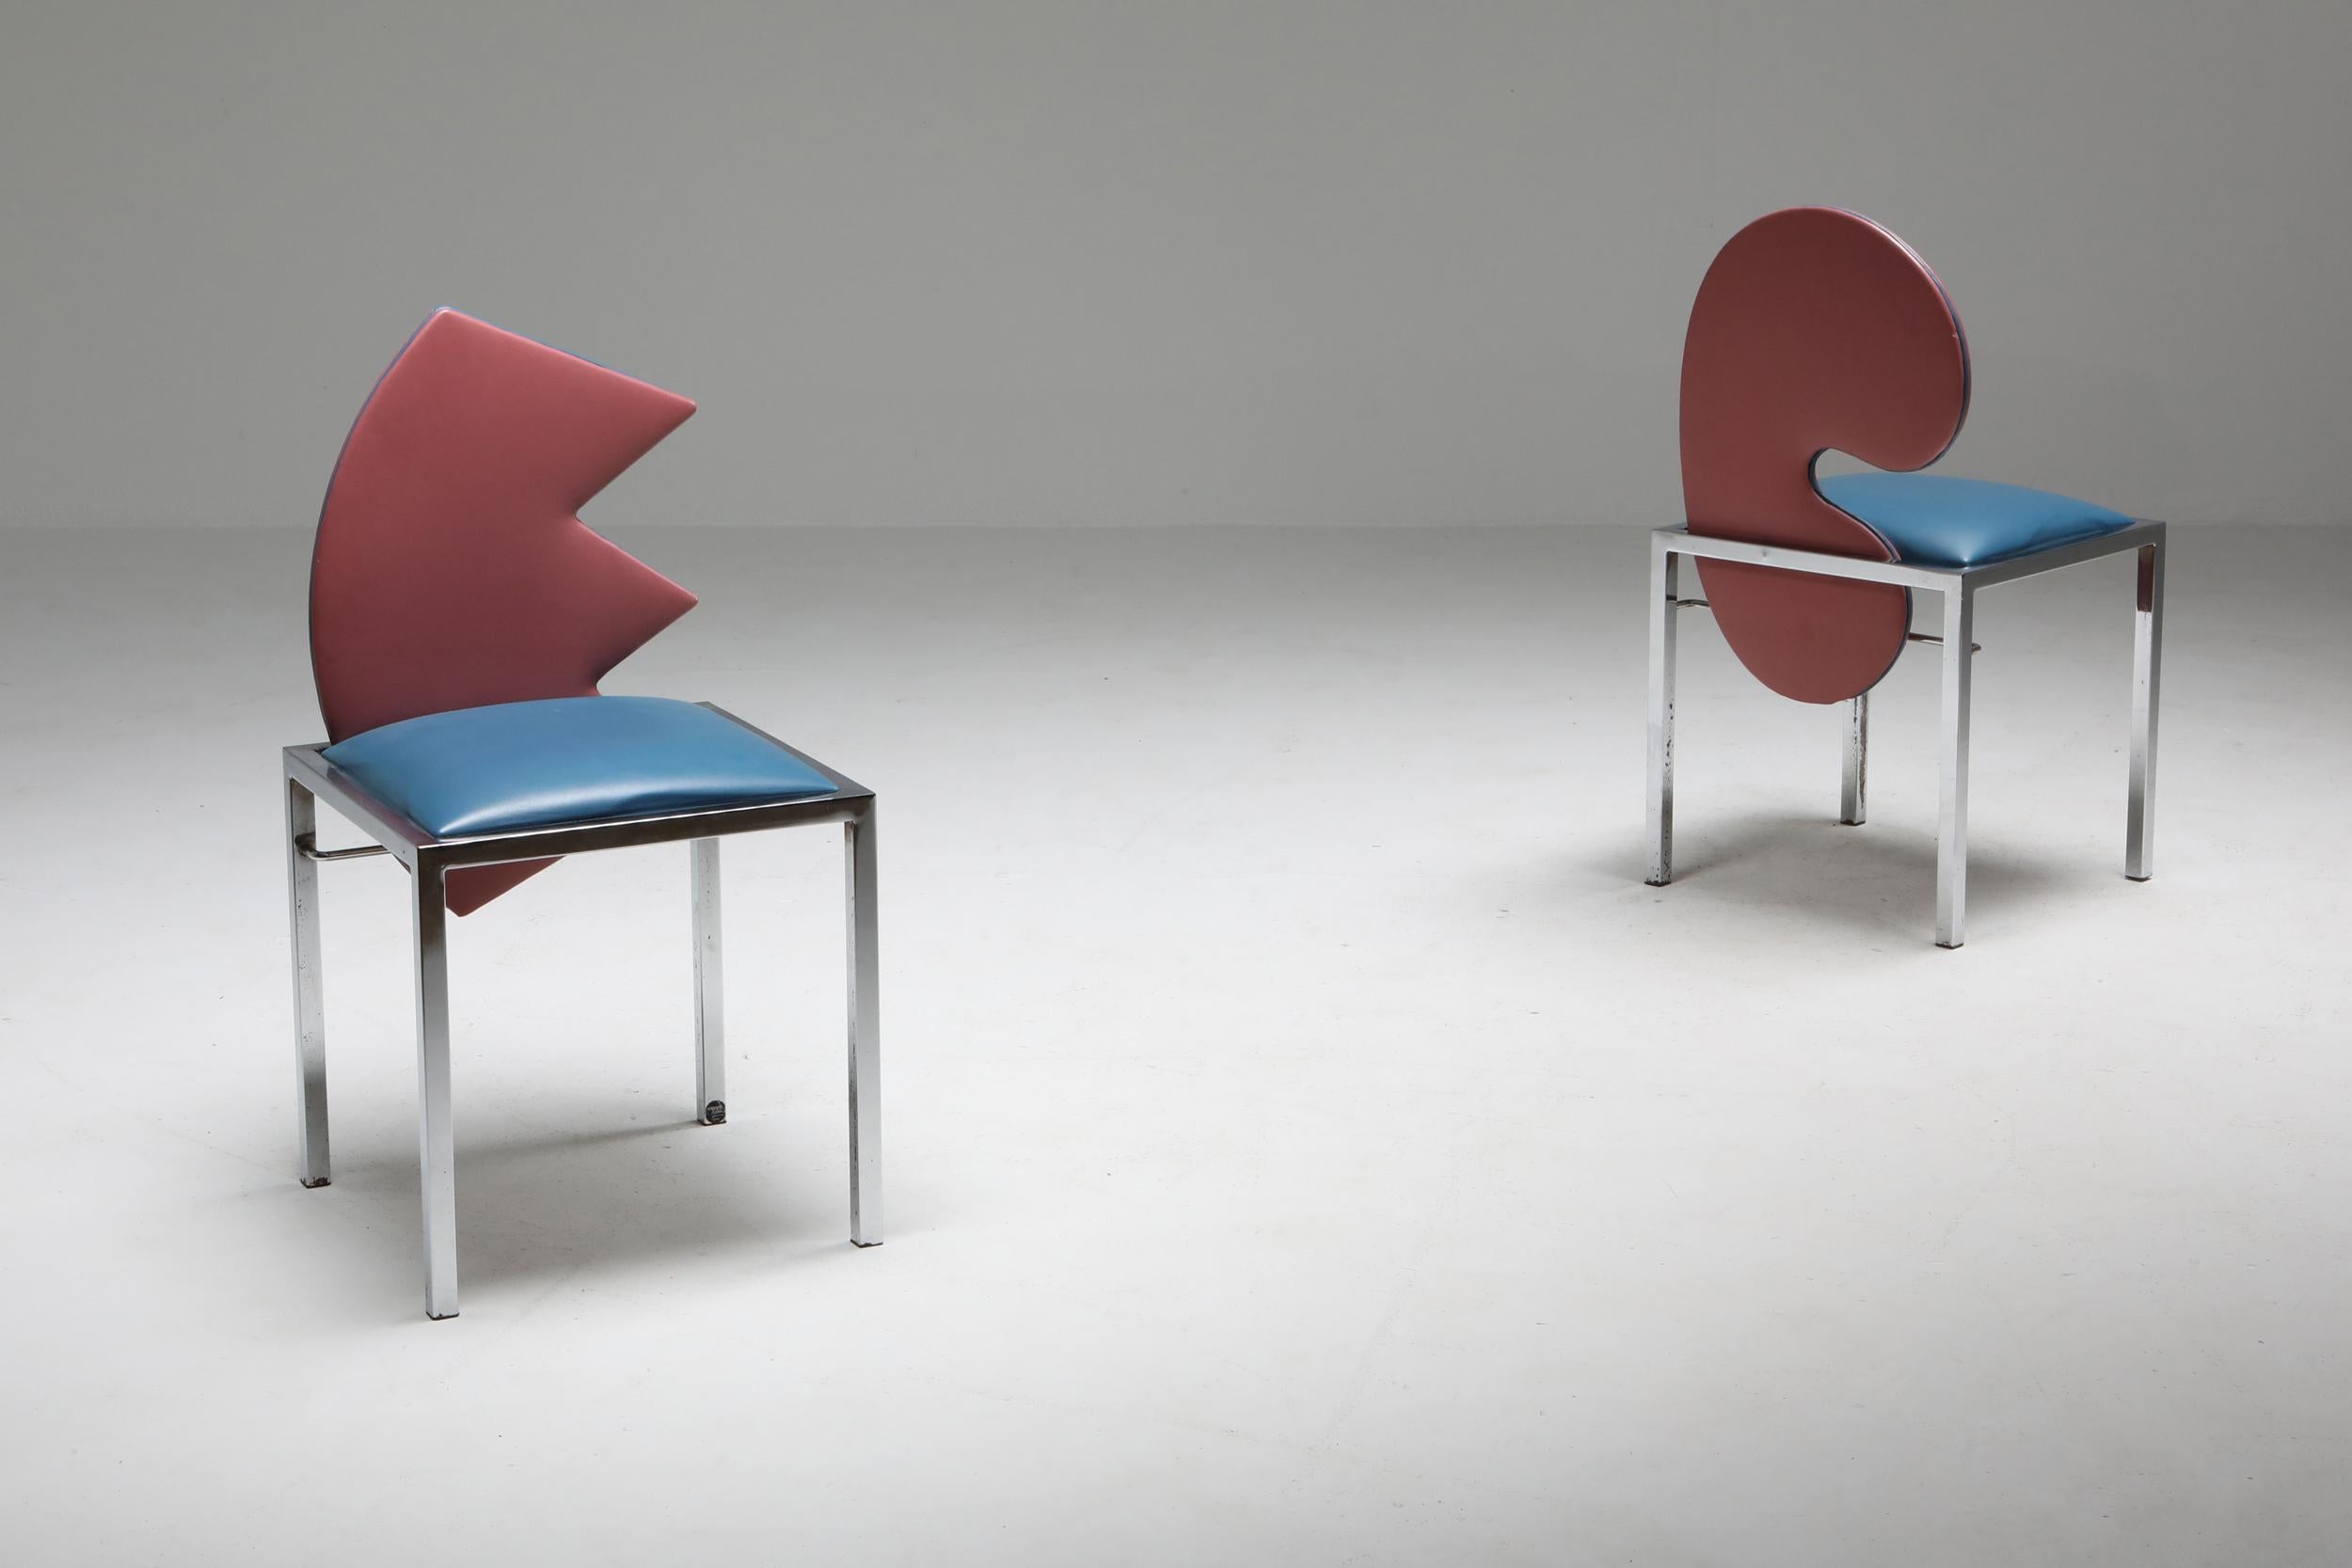 Saporiti set of four chairs Warhol, Malevich, Kandinsky, Fontana 1